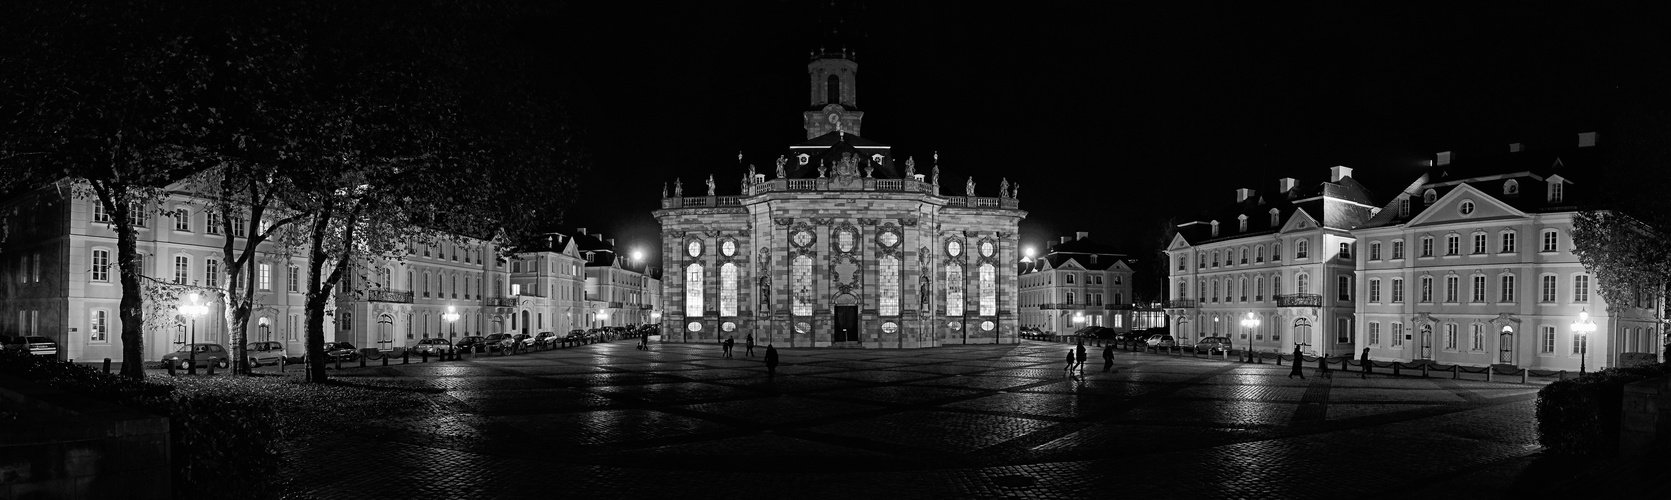 Ludwigskirche mit Ludwigsplatz am Reformationstag 2013